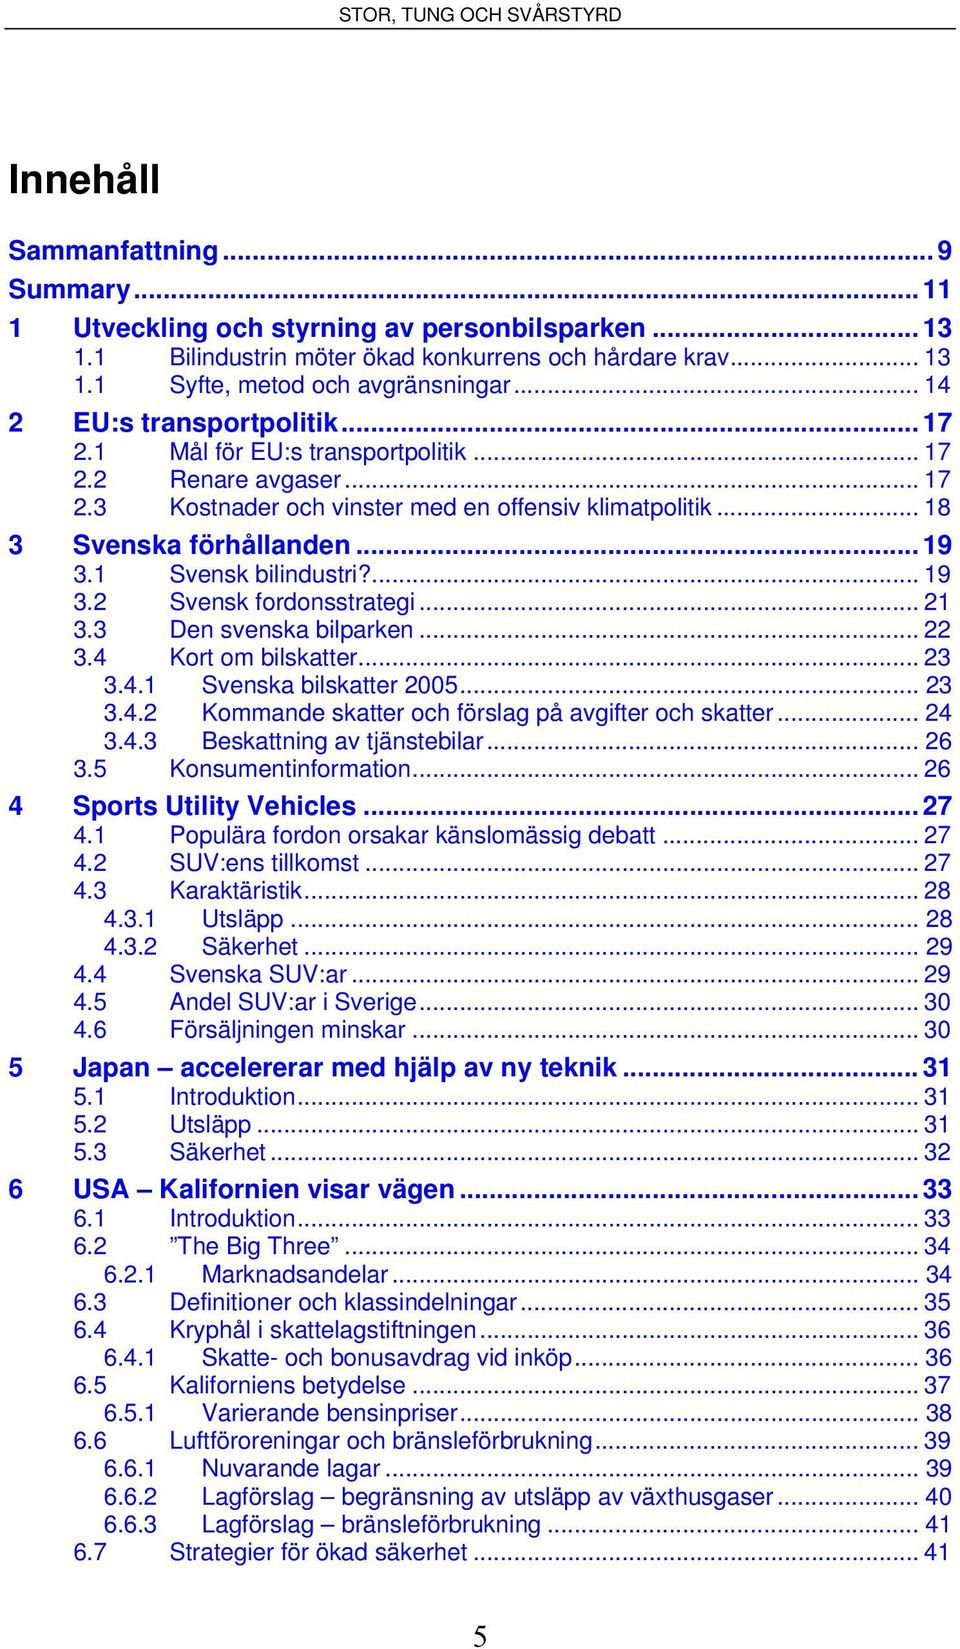 1 Svensk bilindustri?... 19 3.2 Svensk fordonsstrategi... 21 3.3 Den svenska bilparken... 22 3.4 Kort om bilskatter... 23 3.4.1 Svenska bilskatter 2005... 23 3.4.2 Kommande skatter och förslag på avgifter och skatter.